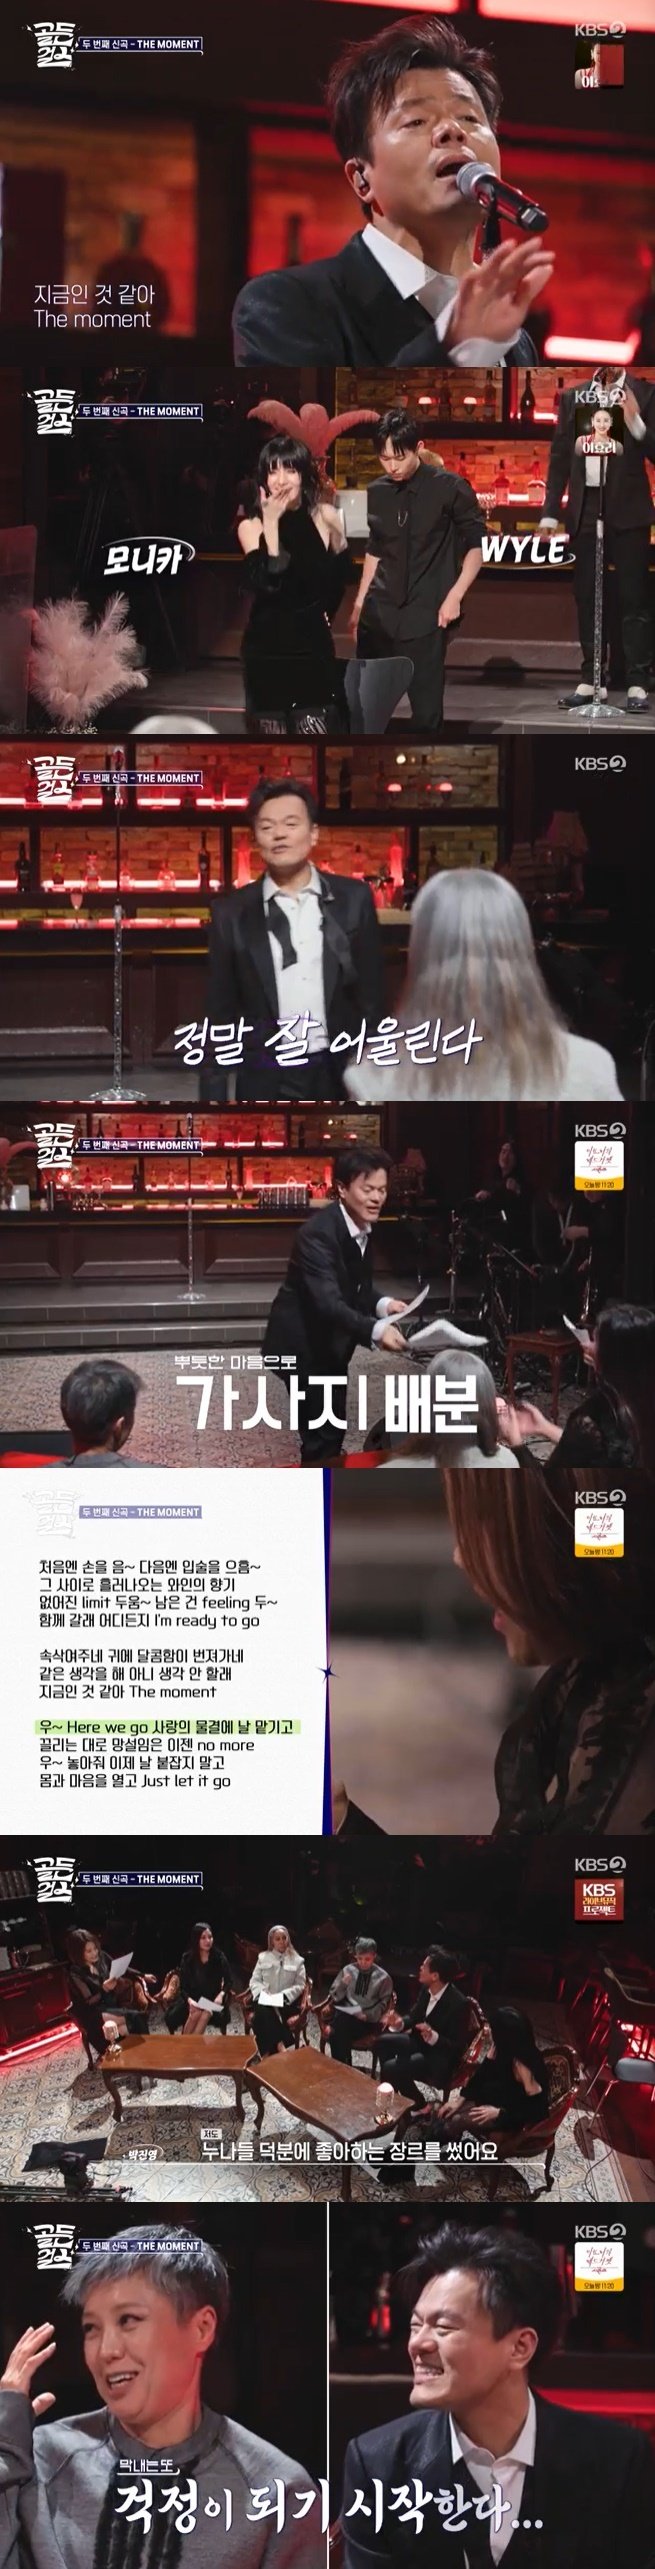 골든걸스 신곡 베일 벗었다…박진영, 라이브로 '더 모먼트' 공개 [RE:TV]